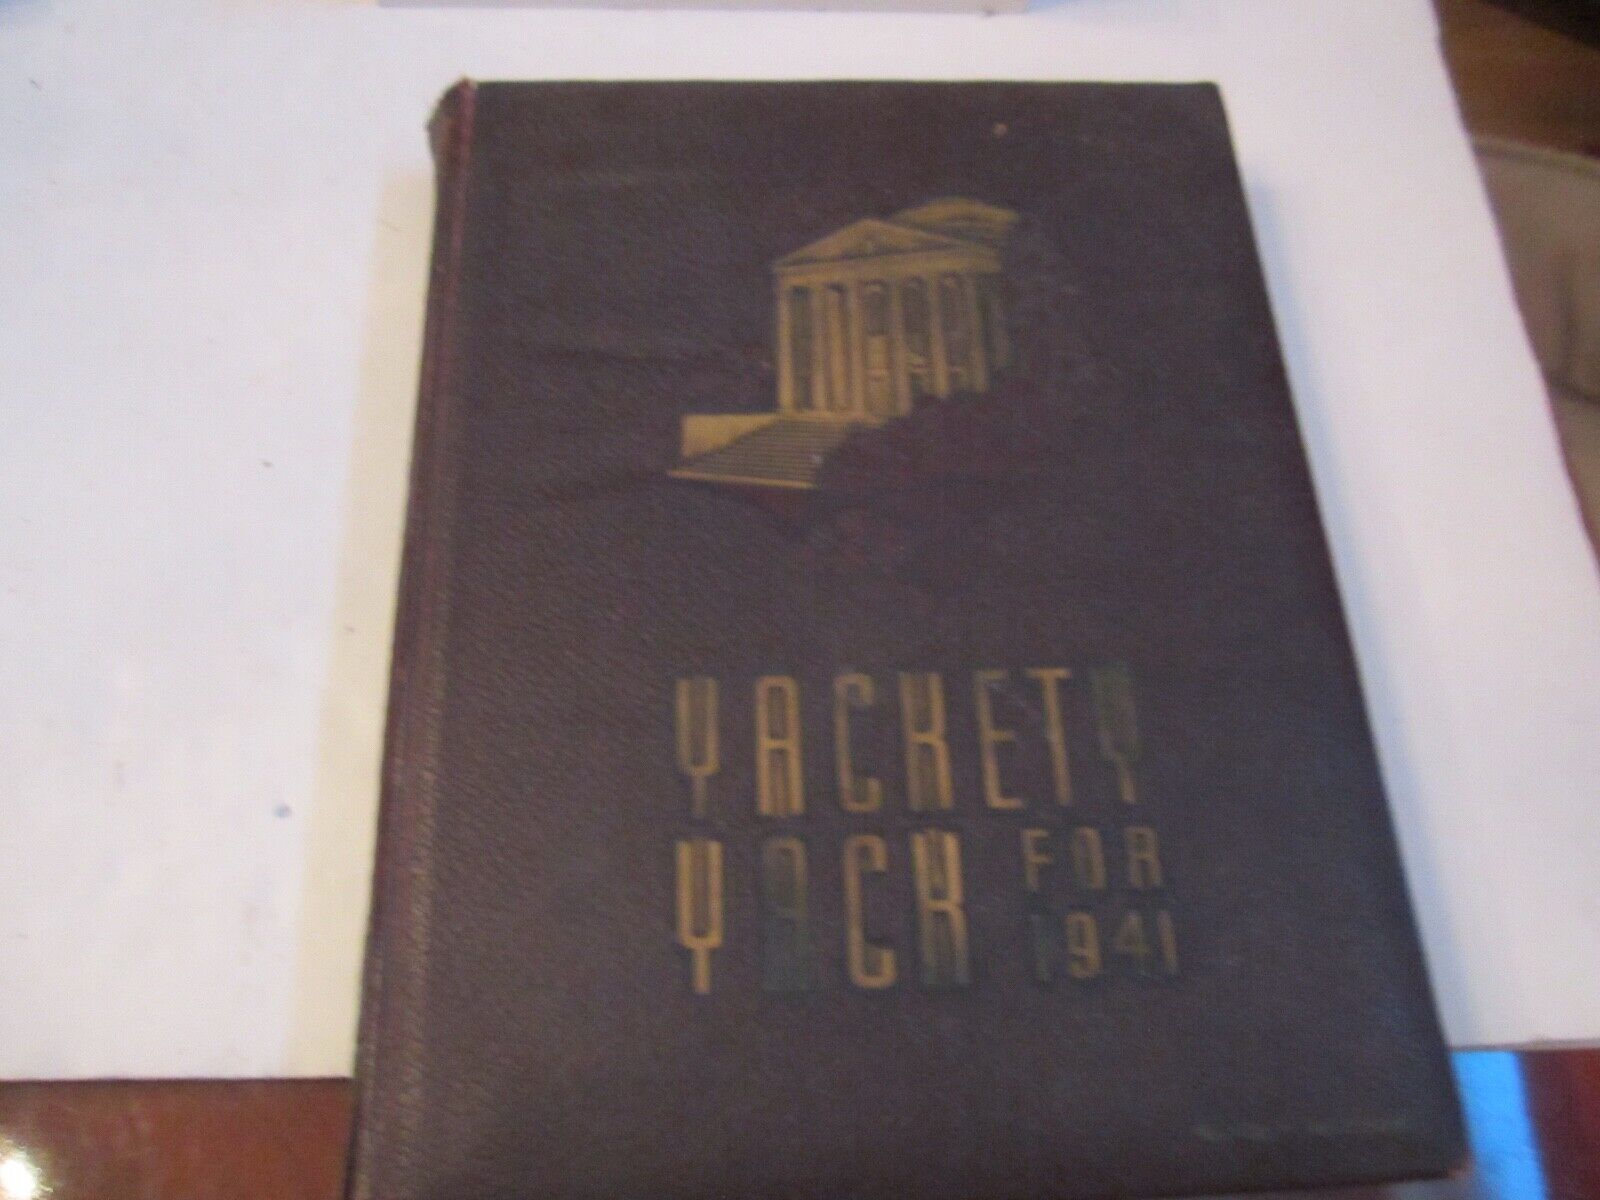 1941 UNIVERSITY OF NORTH CAROLINA YEARBOOK - YAKETY YACK